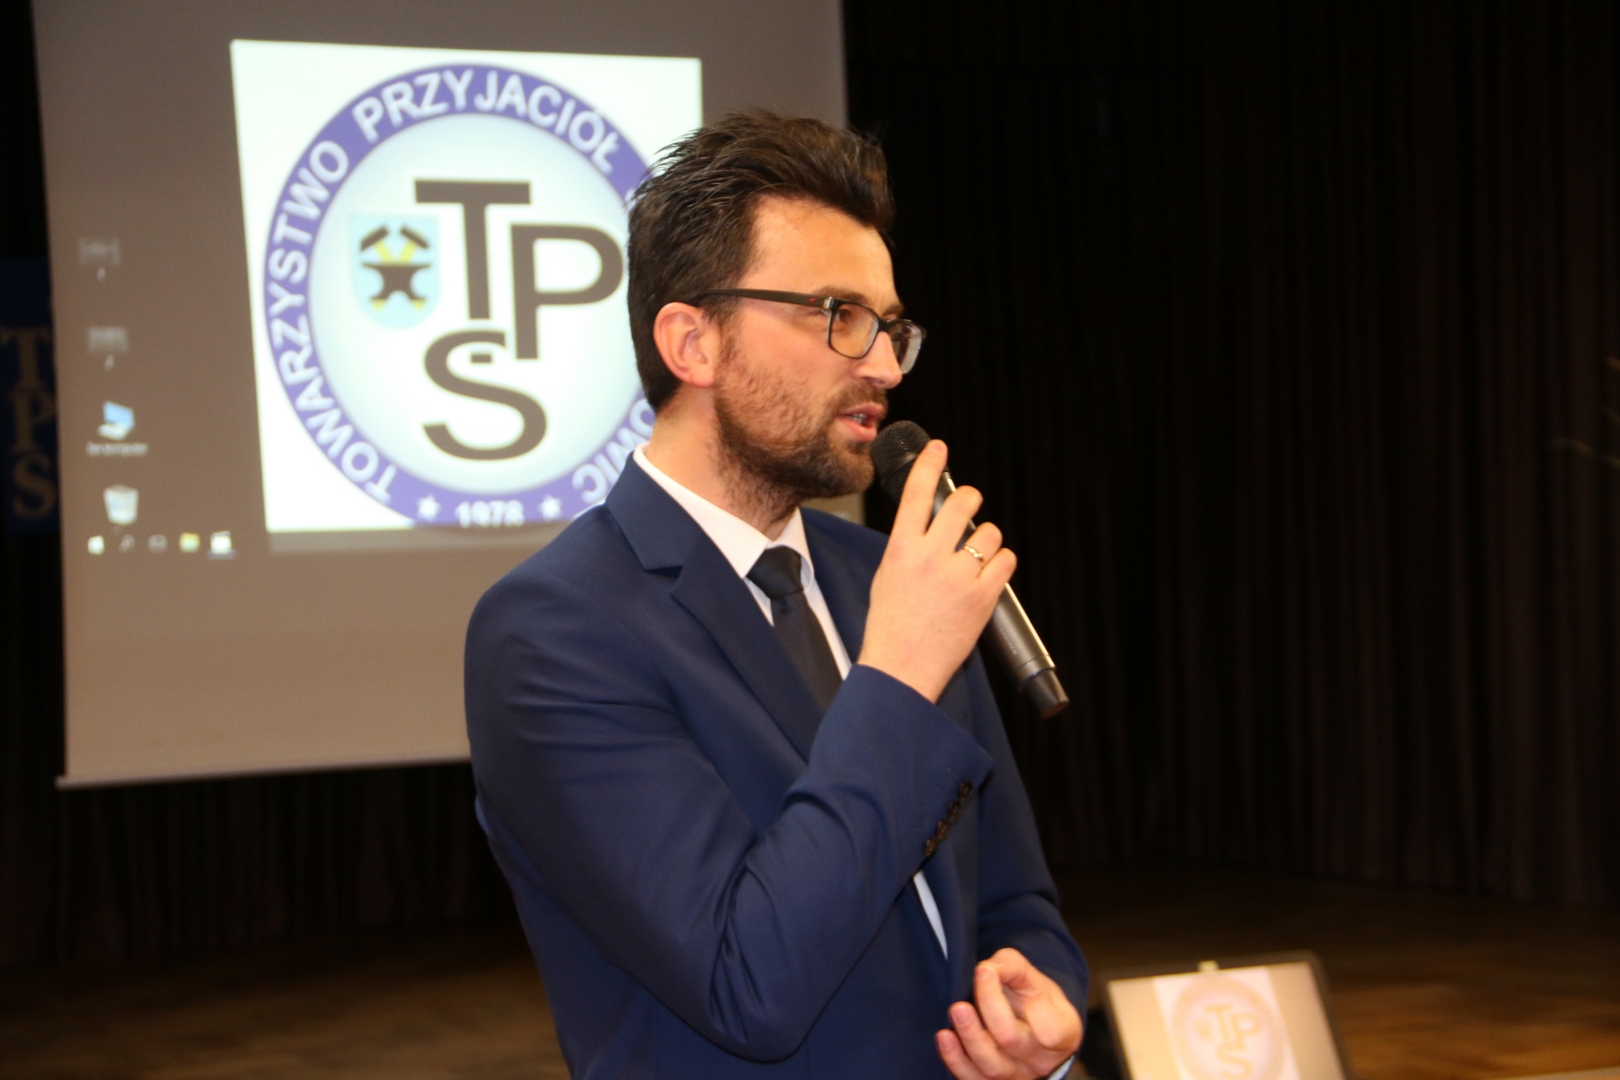 Adam Brzeziński prezes TPS images